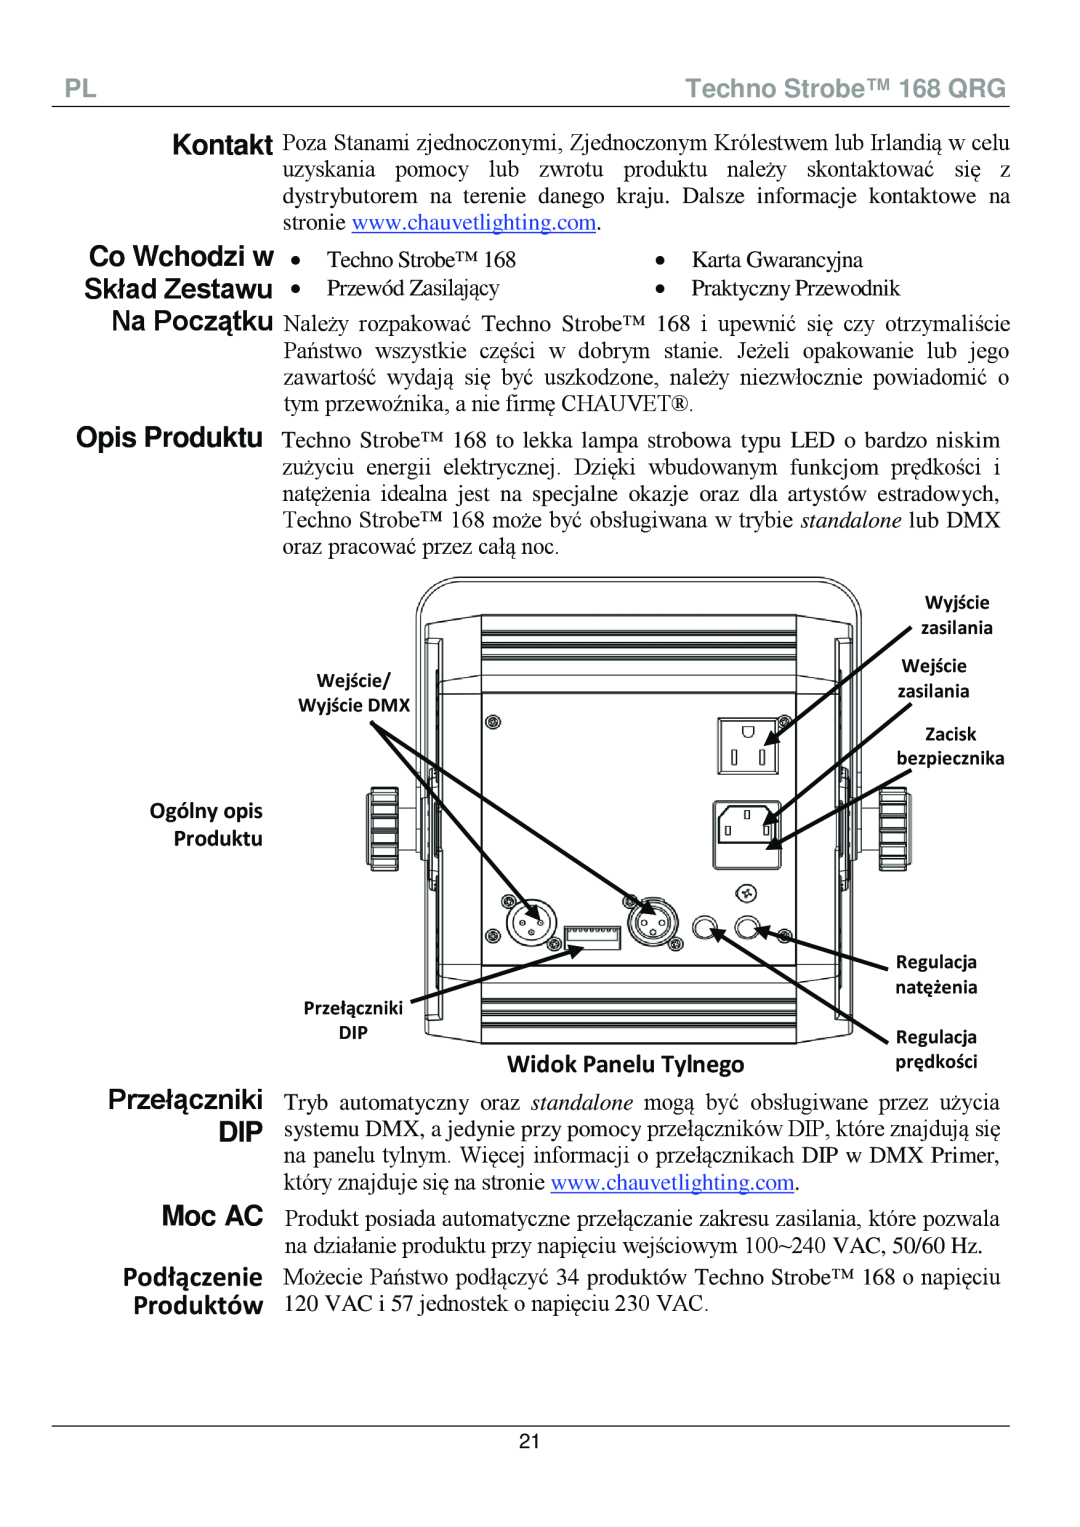 Chauvet 168 manual Co Wchodzi w Skład Zestawu Na Początku, Opis Produktu, Przełączniki DIP Moc AC, Produktów, Podłączenie 